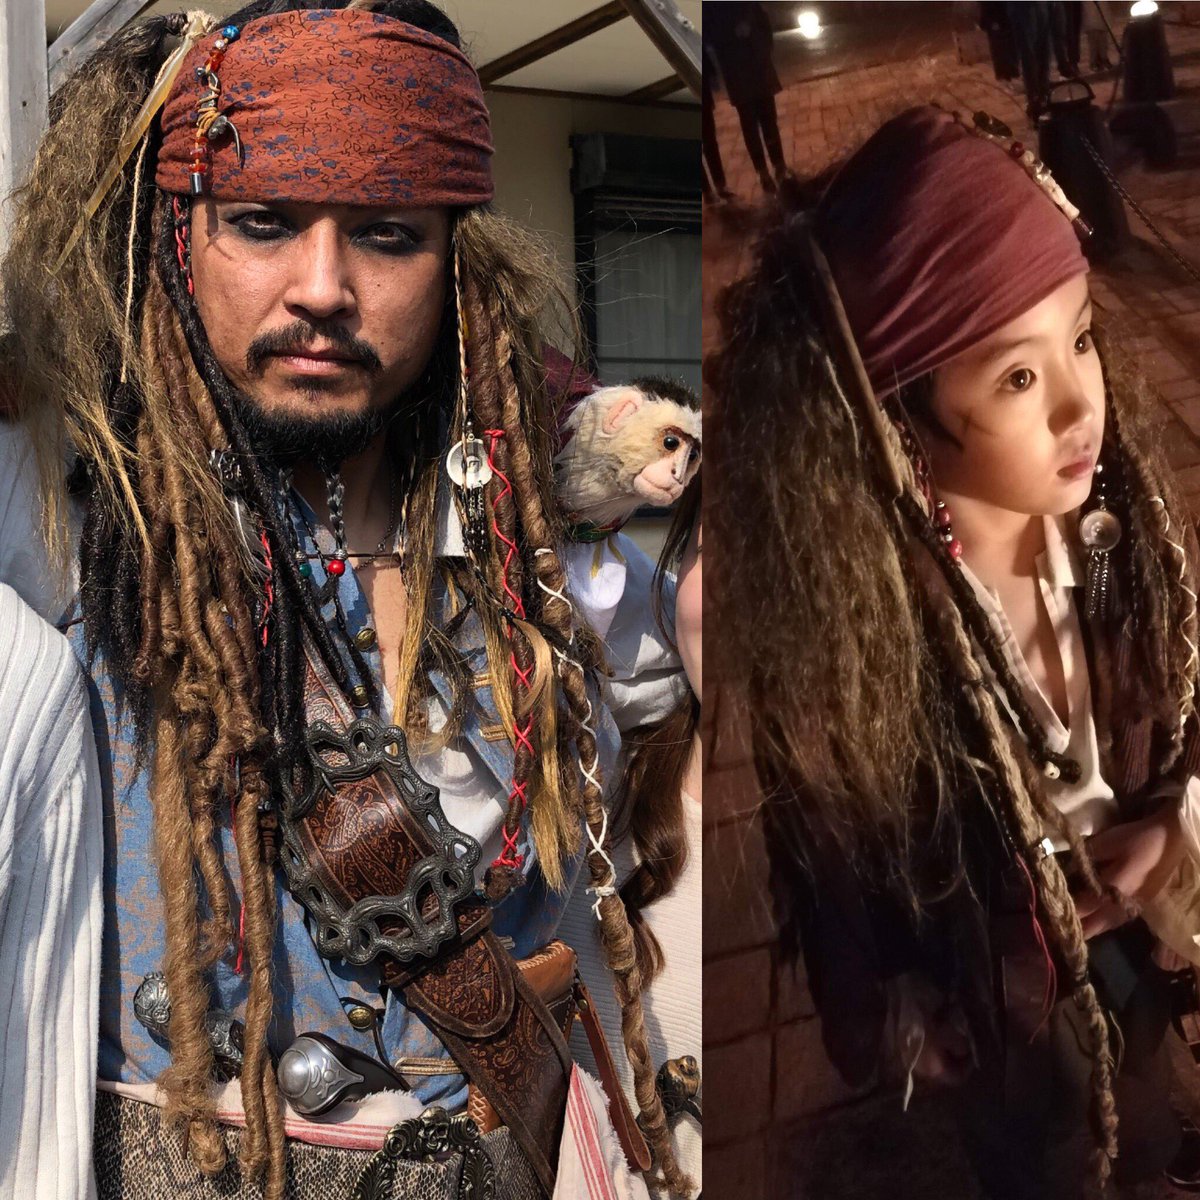 Captain Jack Sparrow 町興し仮装者 Al Twitter 息子は いつまで ジャック スパロウをしてくれるかな ジャック スパロウ ジャックスパロウ キャプテン ジャック スパロウ パイレーツ オブ カリビアン パイレーツオブカリビアン 仮装 コスプレ